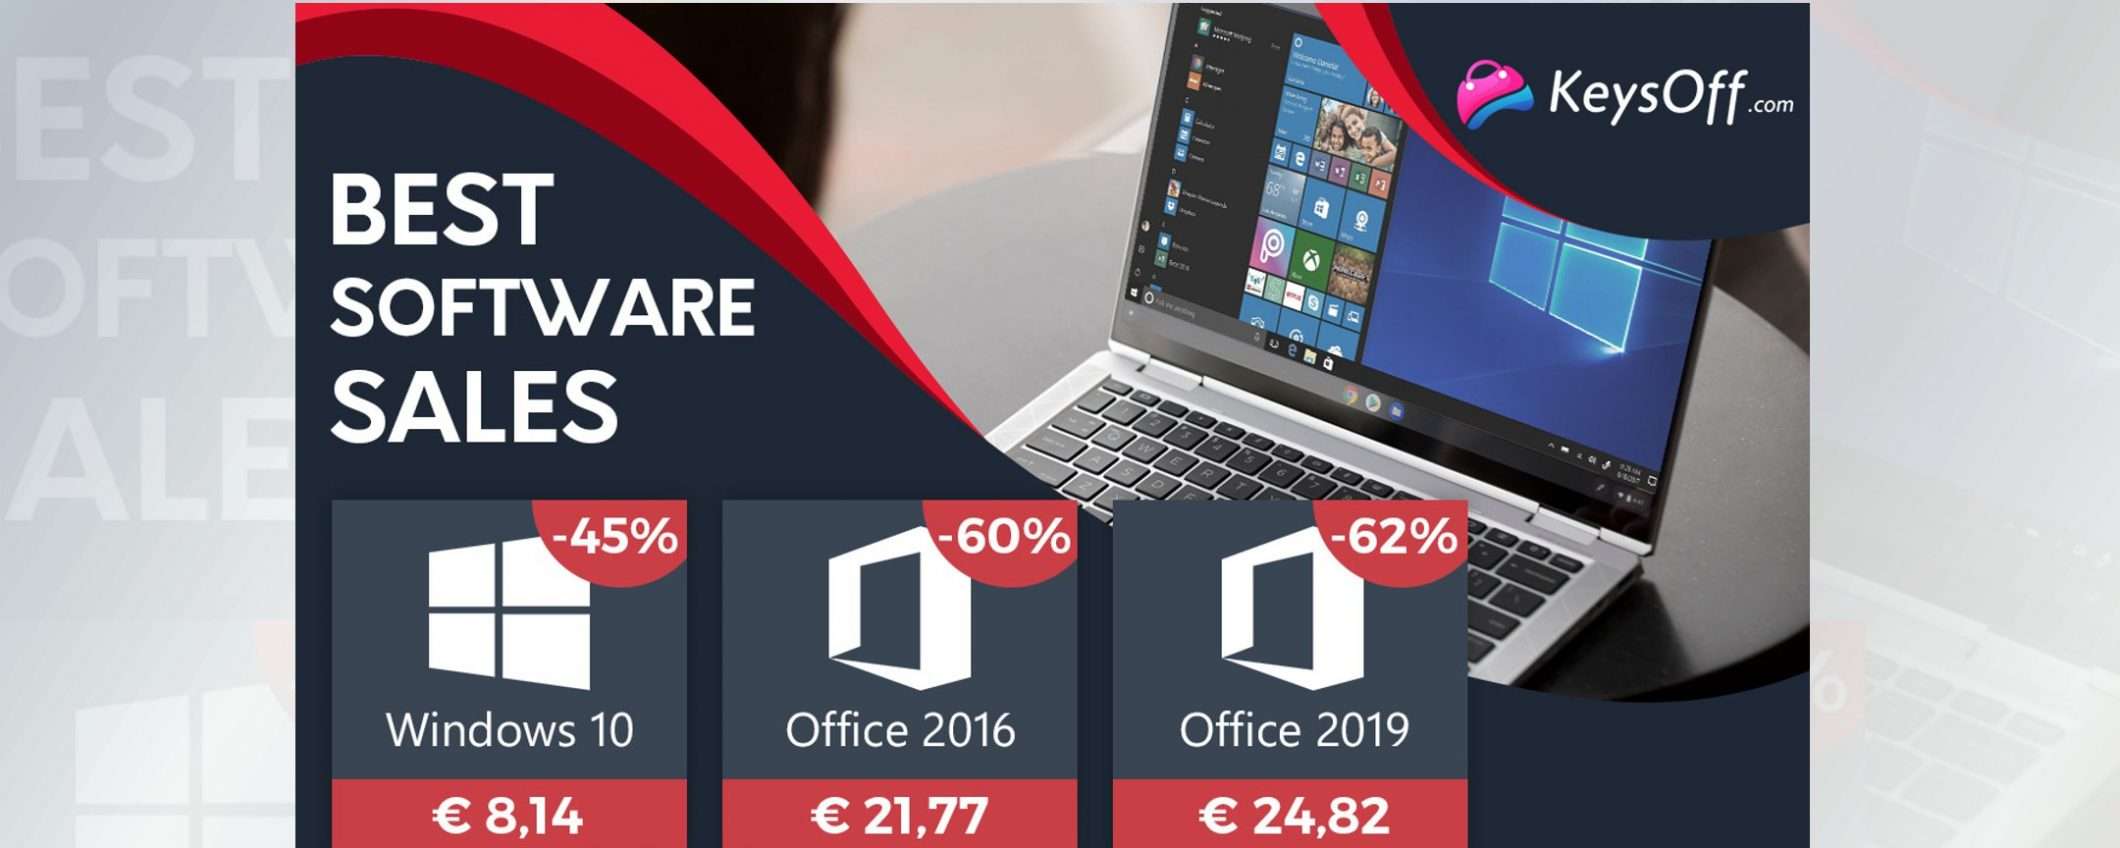 Solo 8€ per Windows 10: Back to School perfetto su keysoff.com